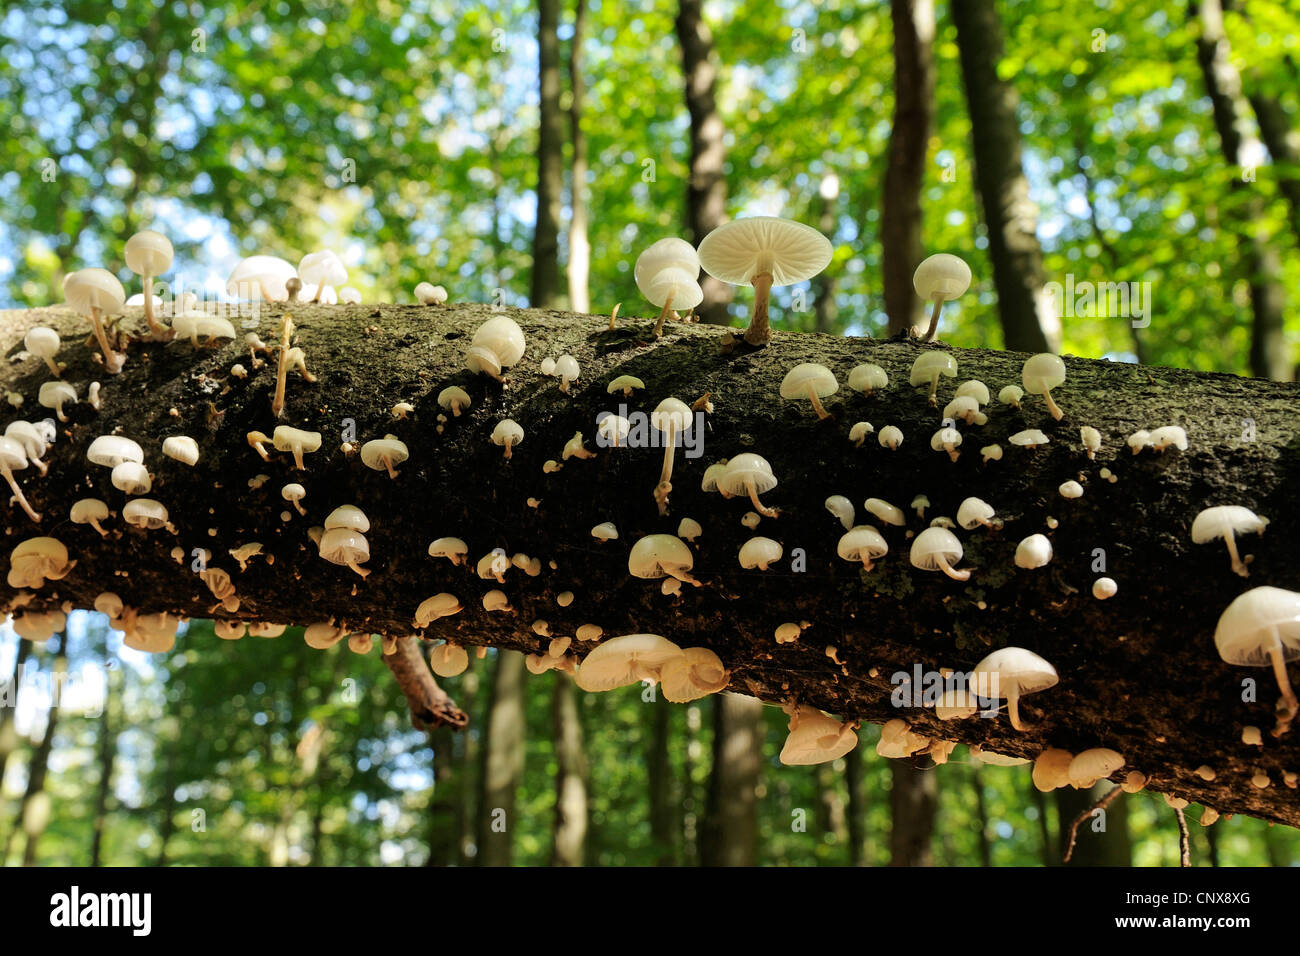 Porzellan-Pilz (Oudemansiella Mucida), eine Gruppe von Pilzen im Herbst Wald, Deutschland, Nordrhein-Westfalen Stockfoto